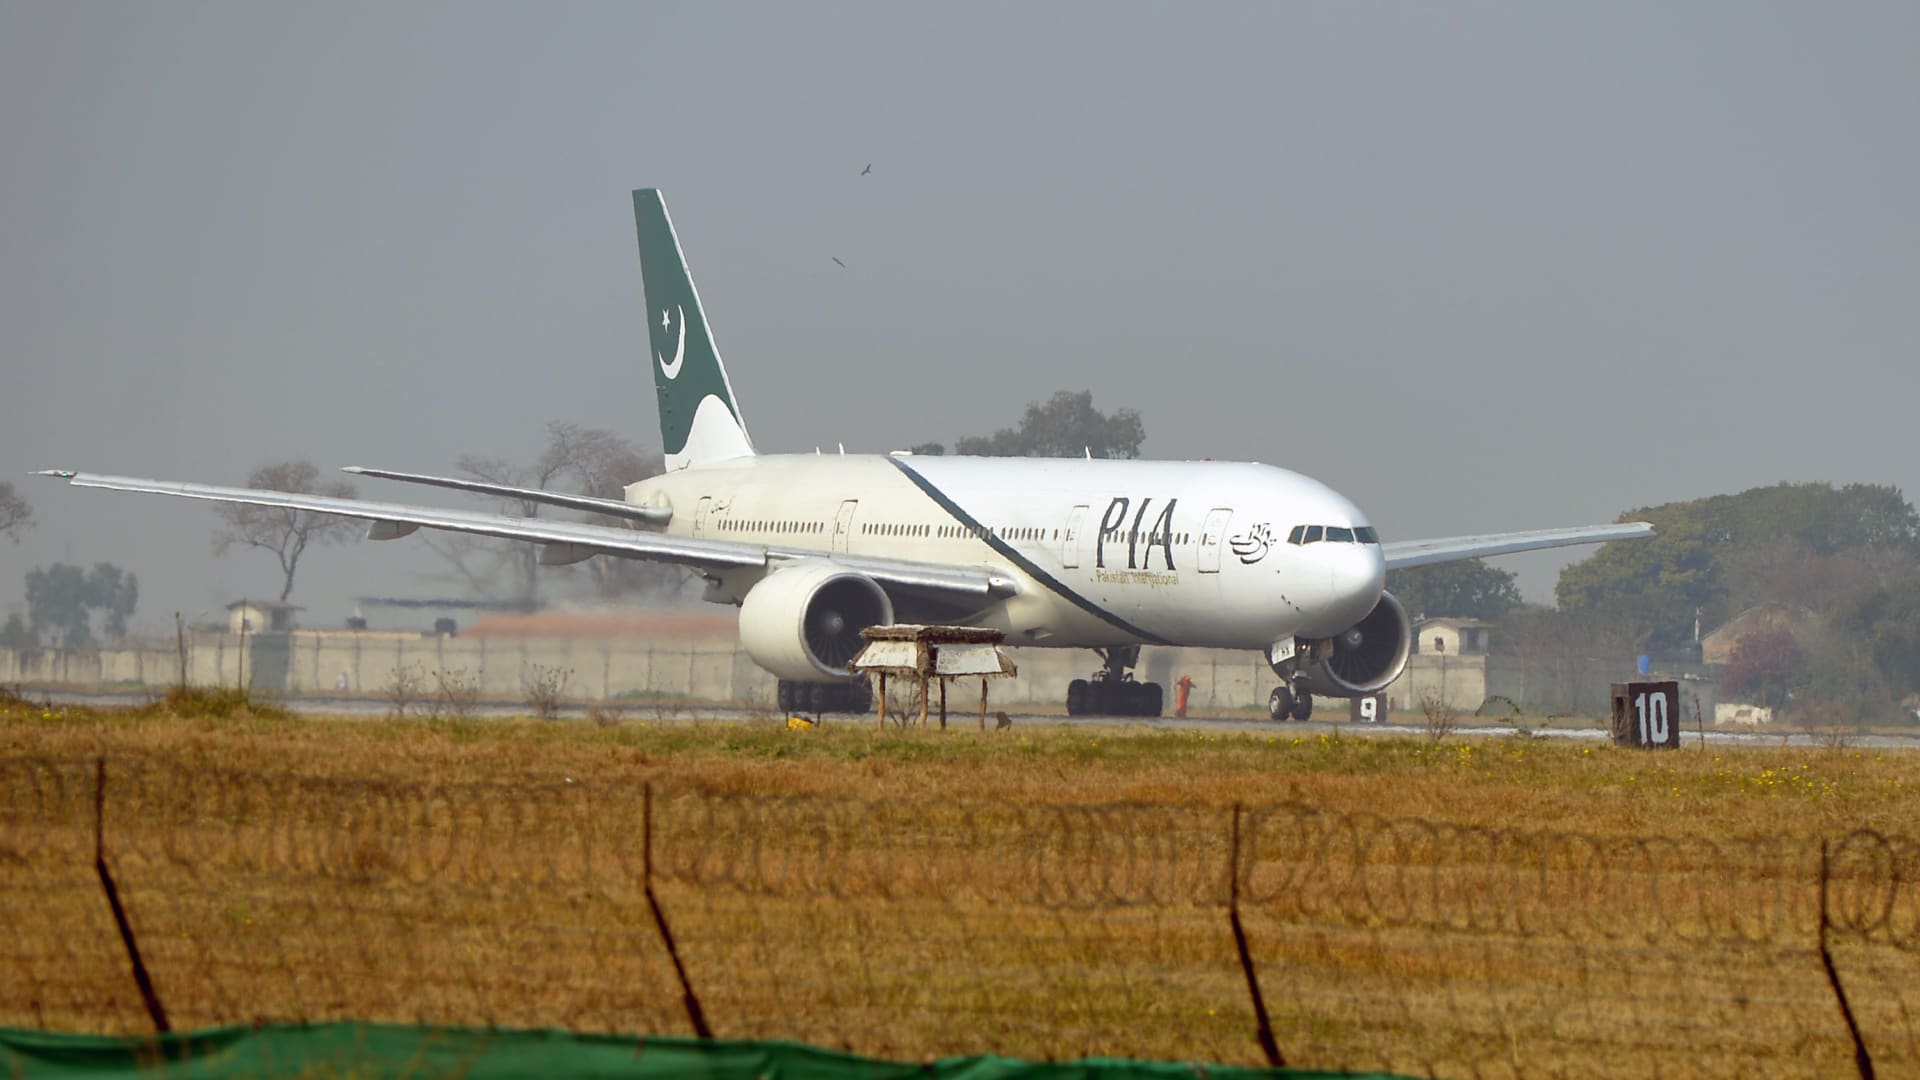 "فقدنا محركا".. آخر ما قاله قائد الطائرة الباكستانية قبل تحطمها